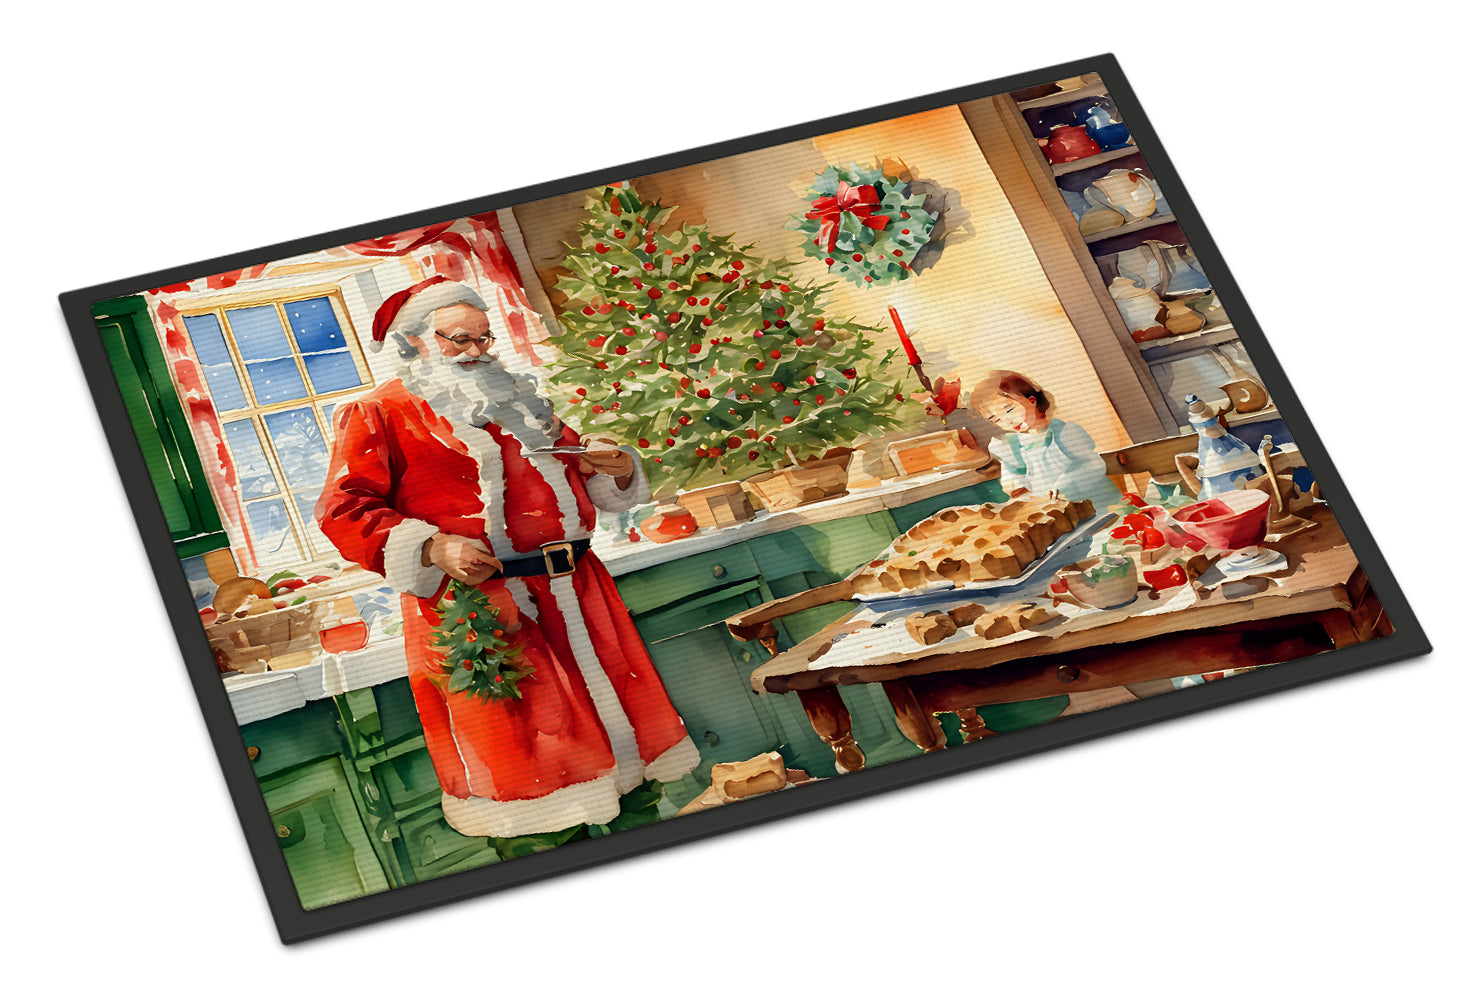 Buy this Cookies with Santa Claus Papa Noel Doormat